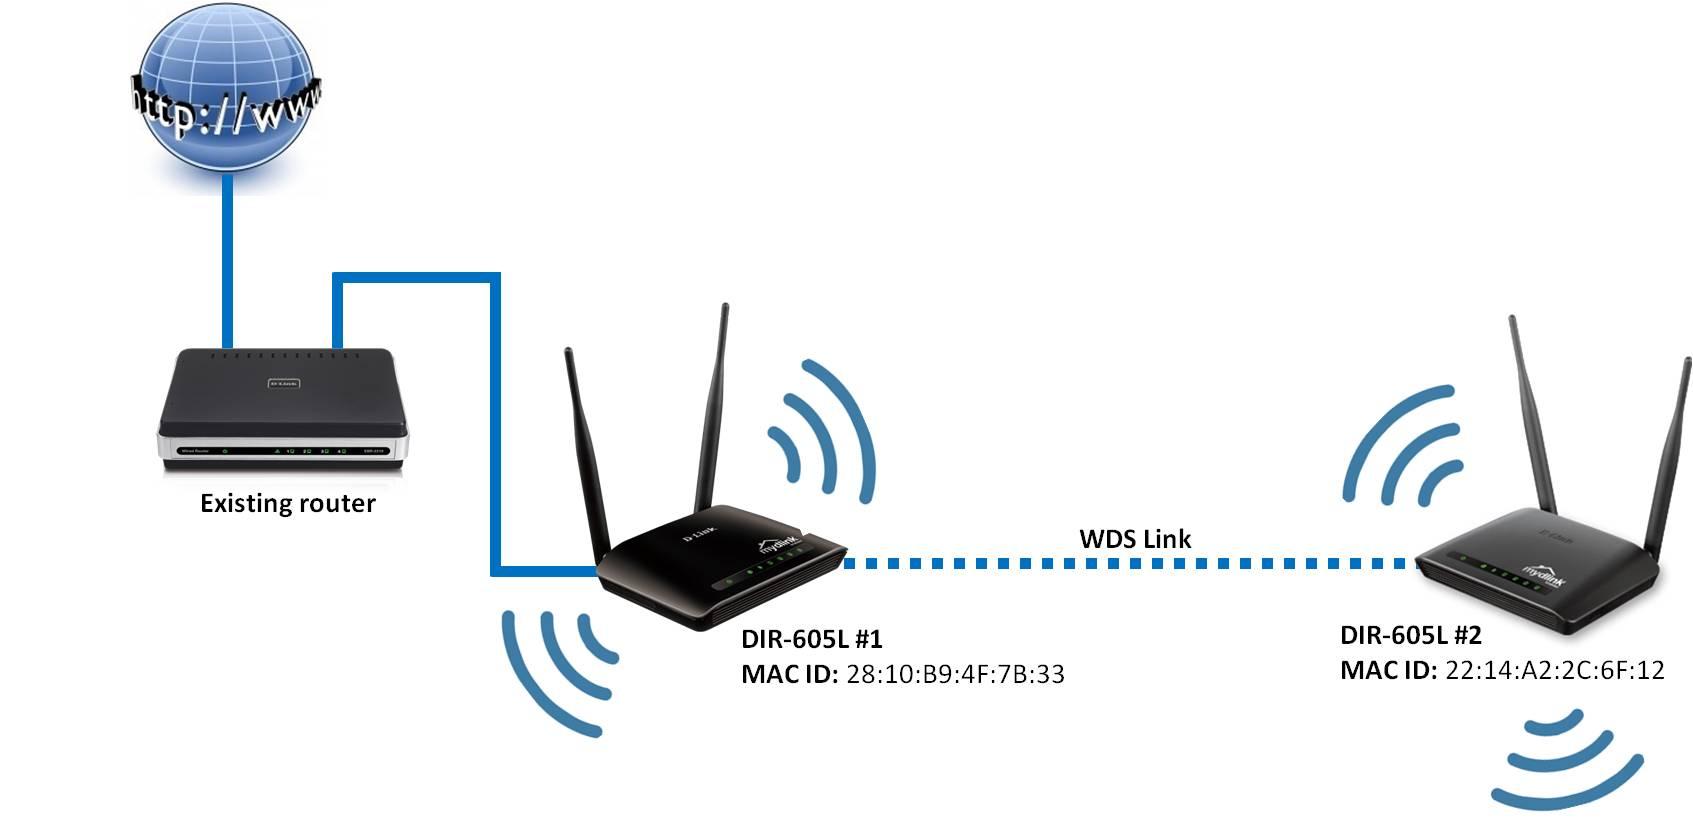 WDS configuración entre routers y APs